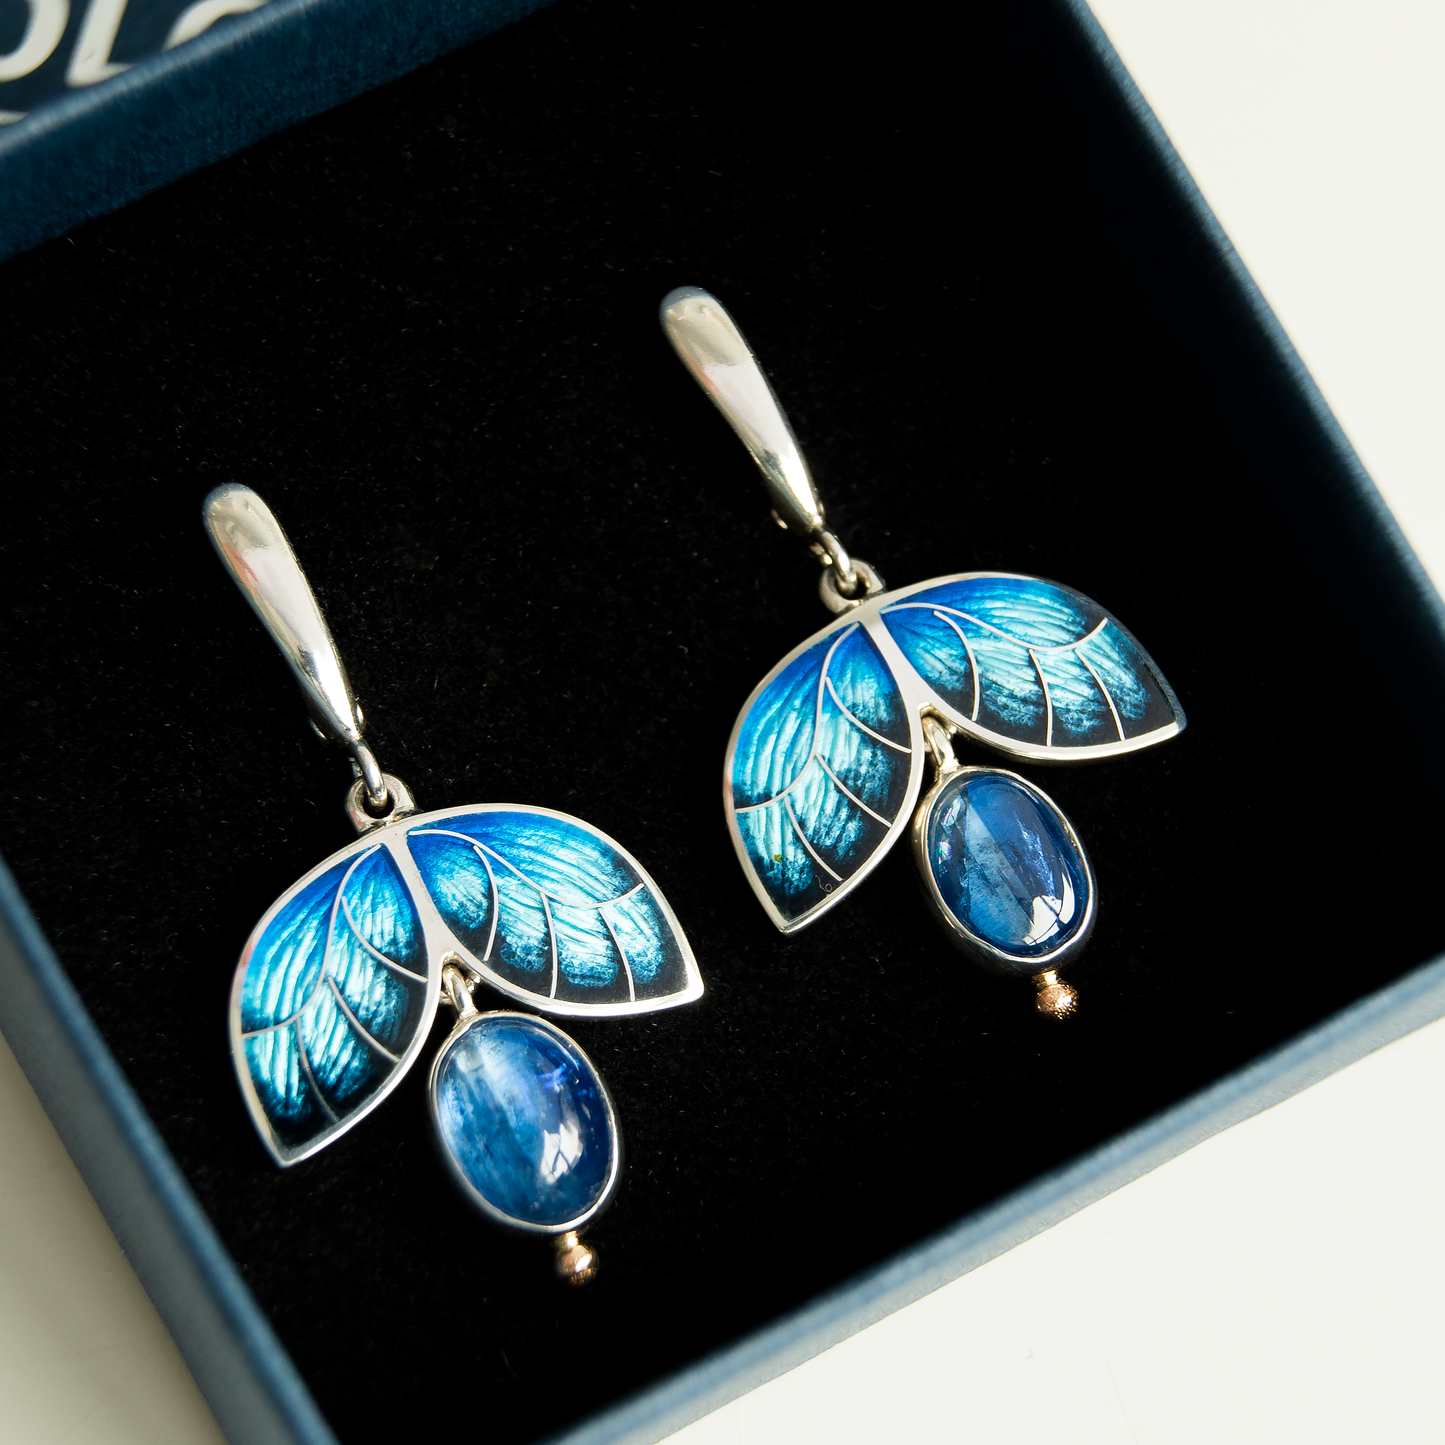 Morpho Butterfly Earrings Cloisonne Enamel Blue Earrings With Kyanite